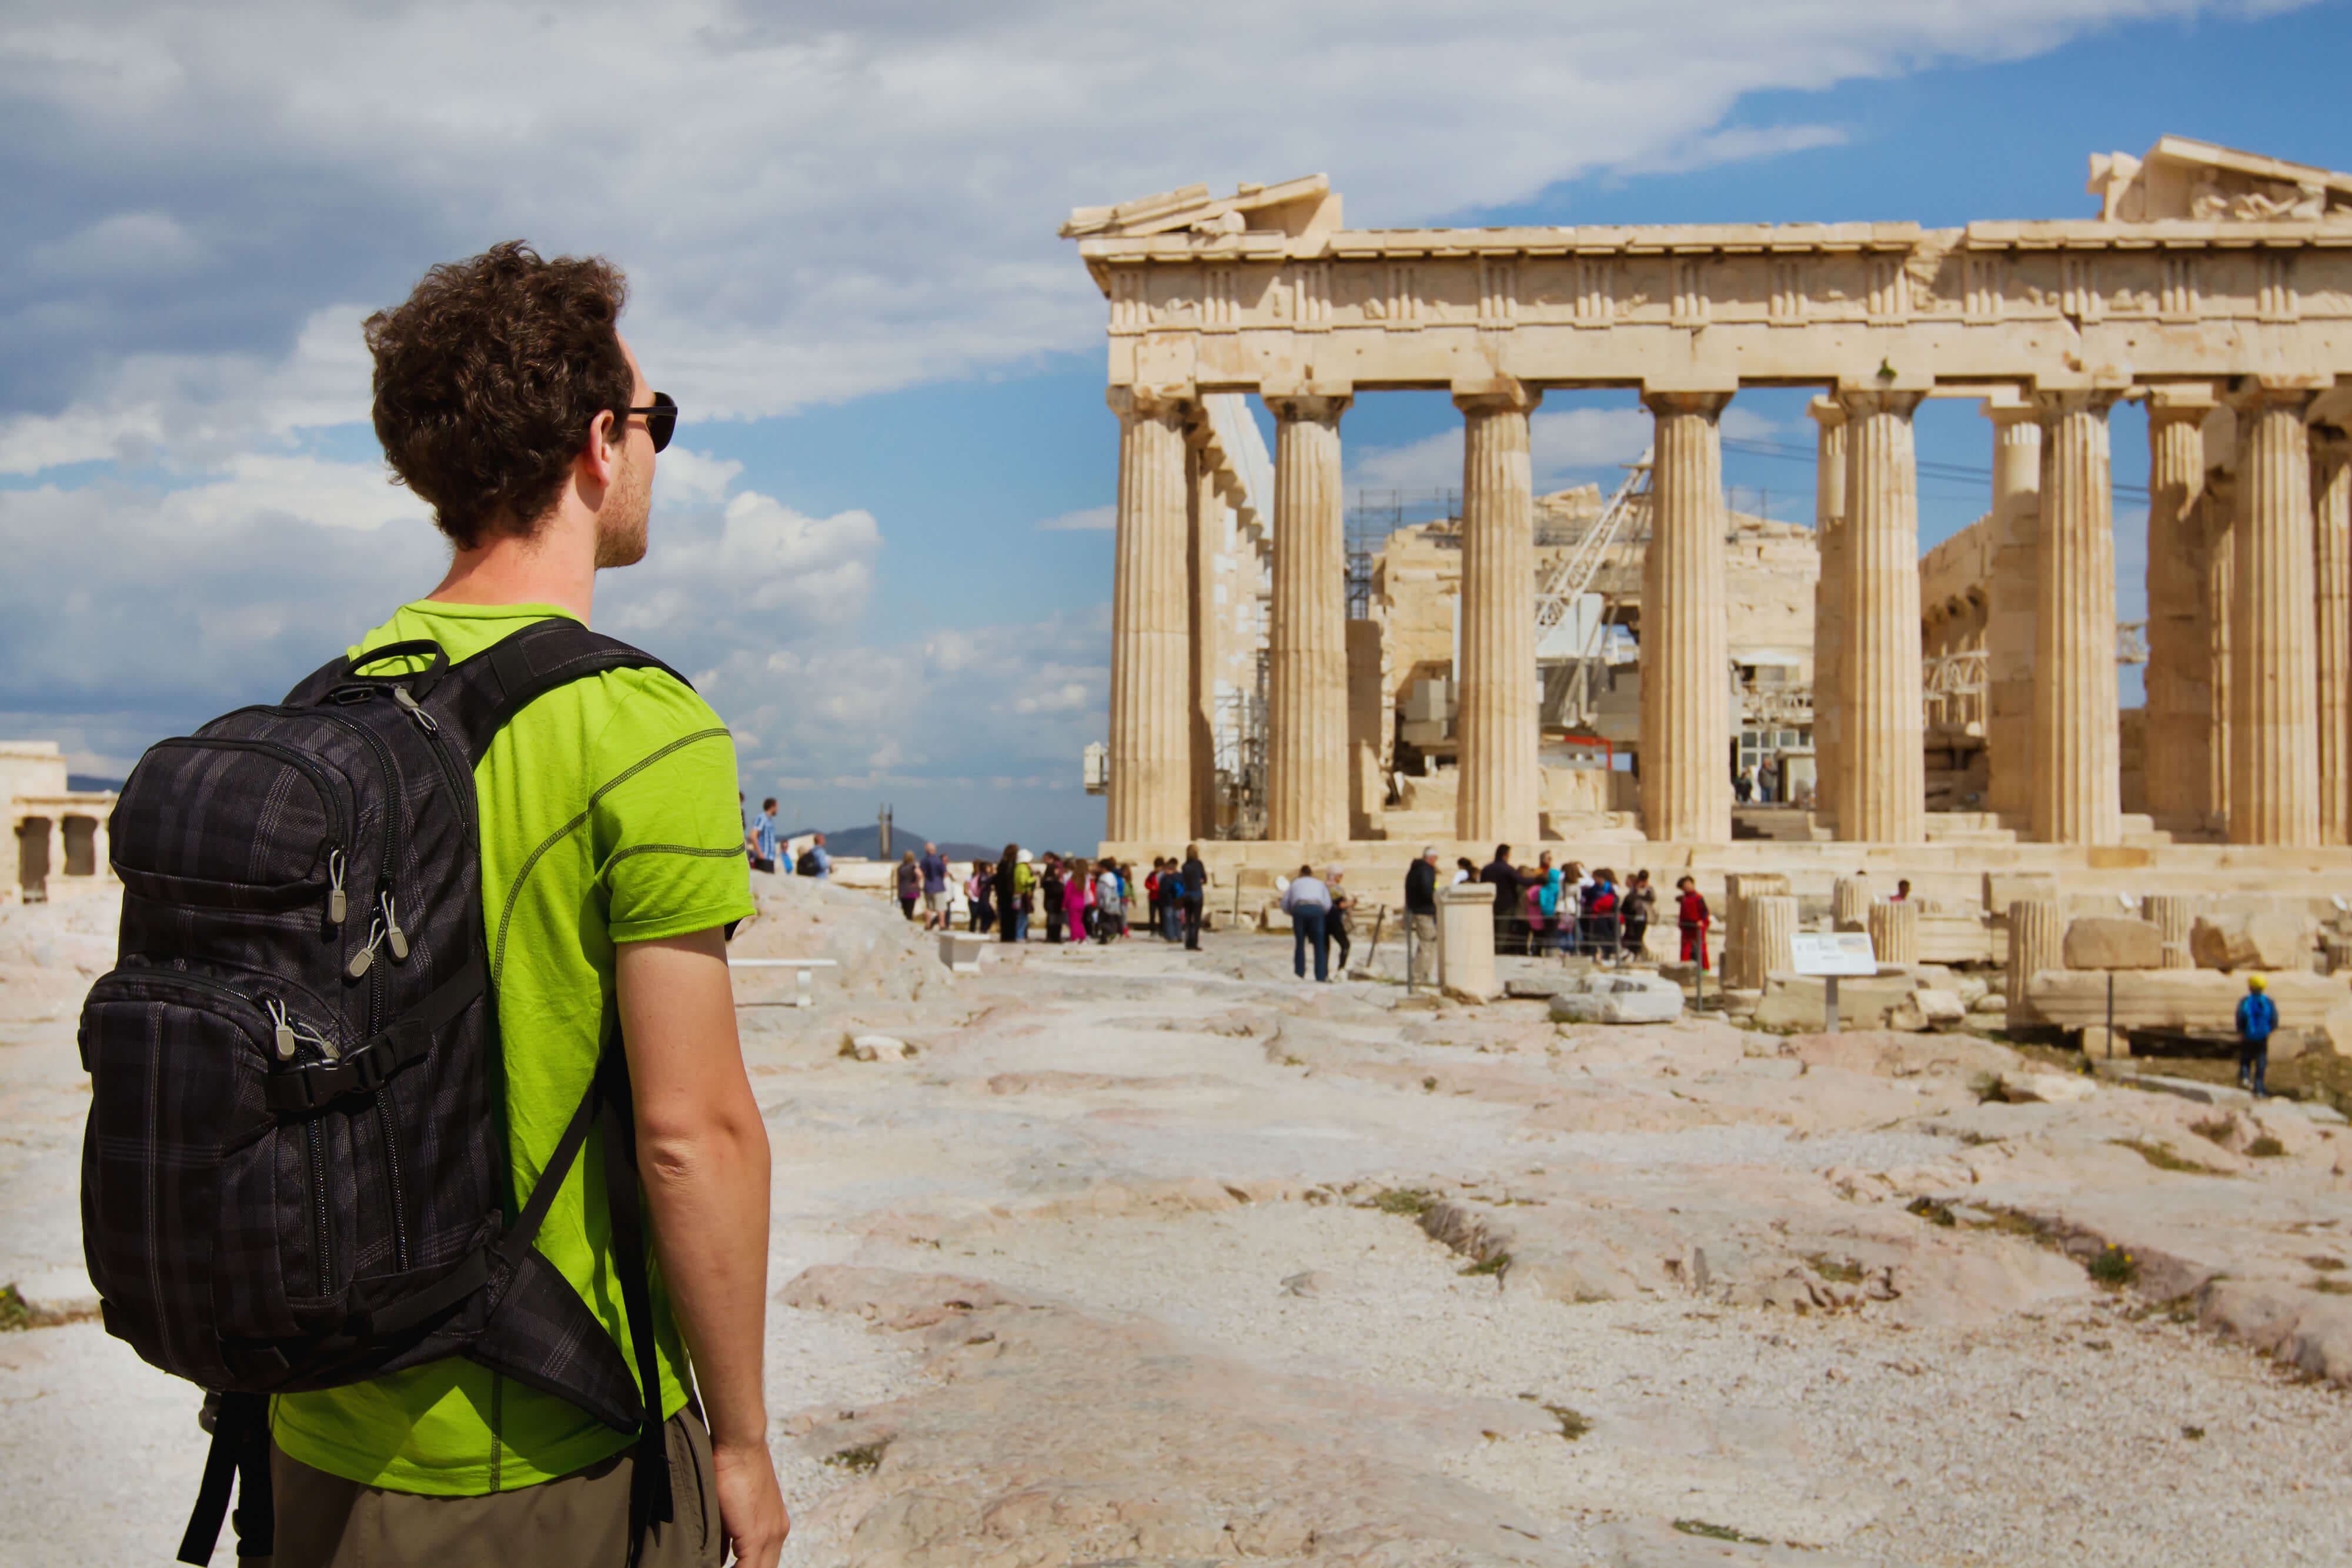 Долгов греции. Греция Афины Парфенон туристы. Афины Греция Колизей. Экскурсия Акрополь в Афинах. Историко-культурный туризм.